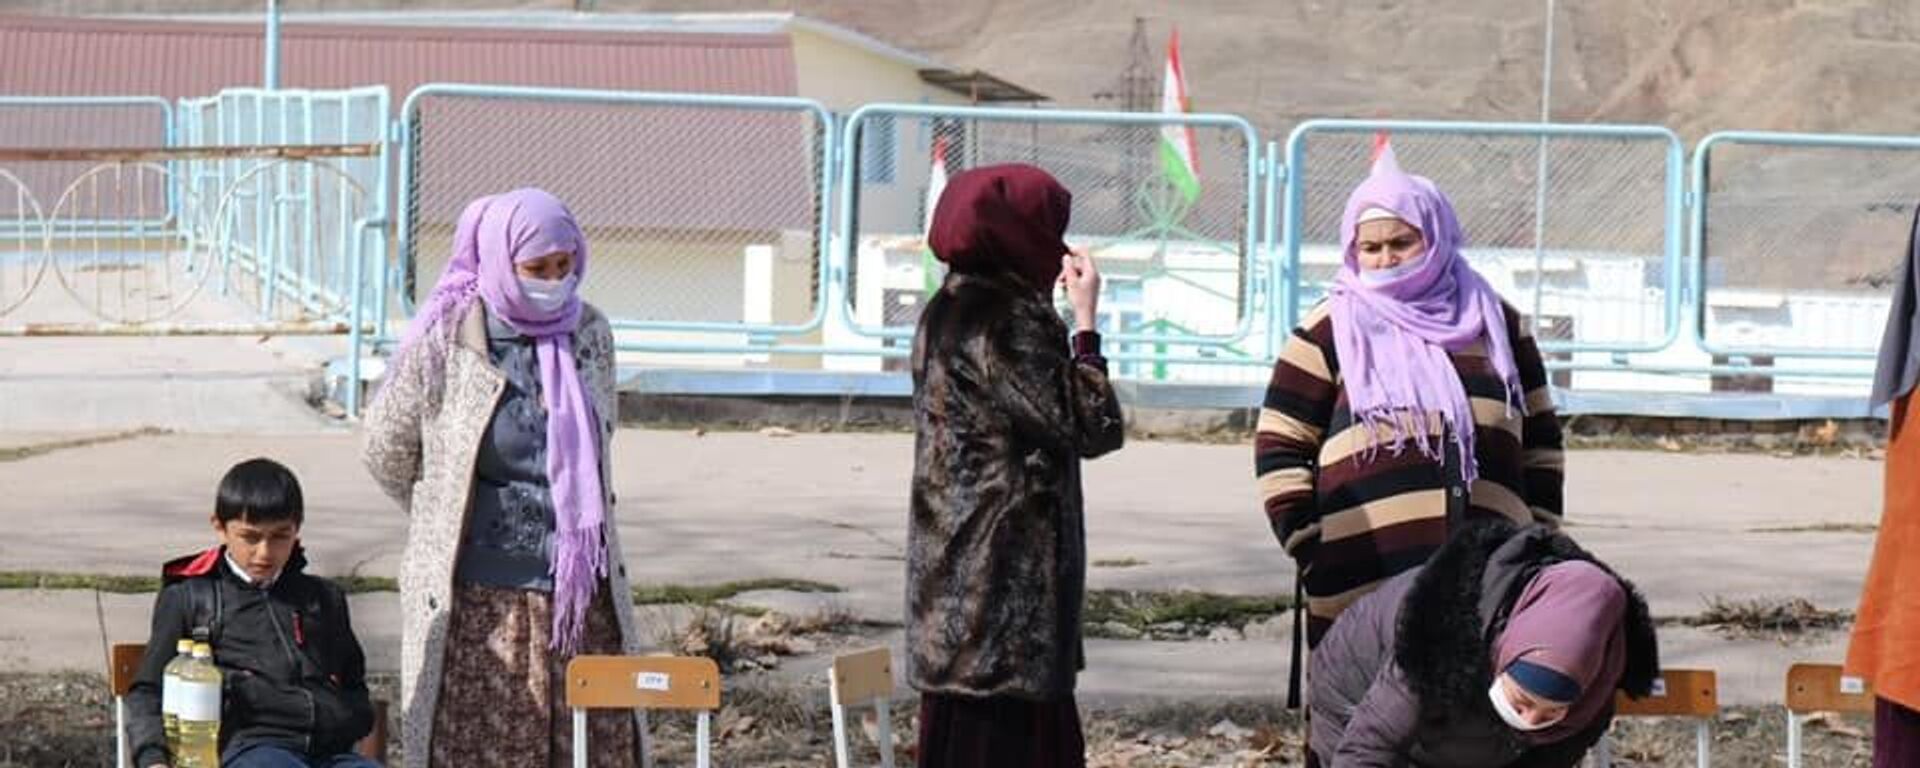 Россия выделила $1 миллион для помощи наиболее уязвимым школьникам Таджикистана - Sputnik Таджикистан, 1920, 22.02.2021